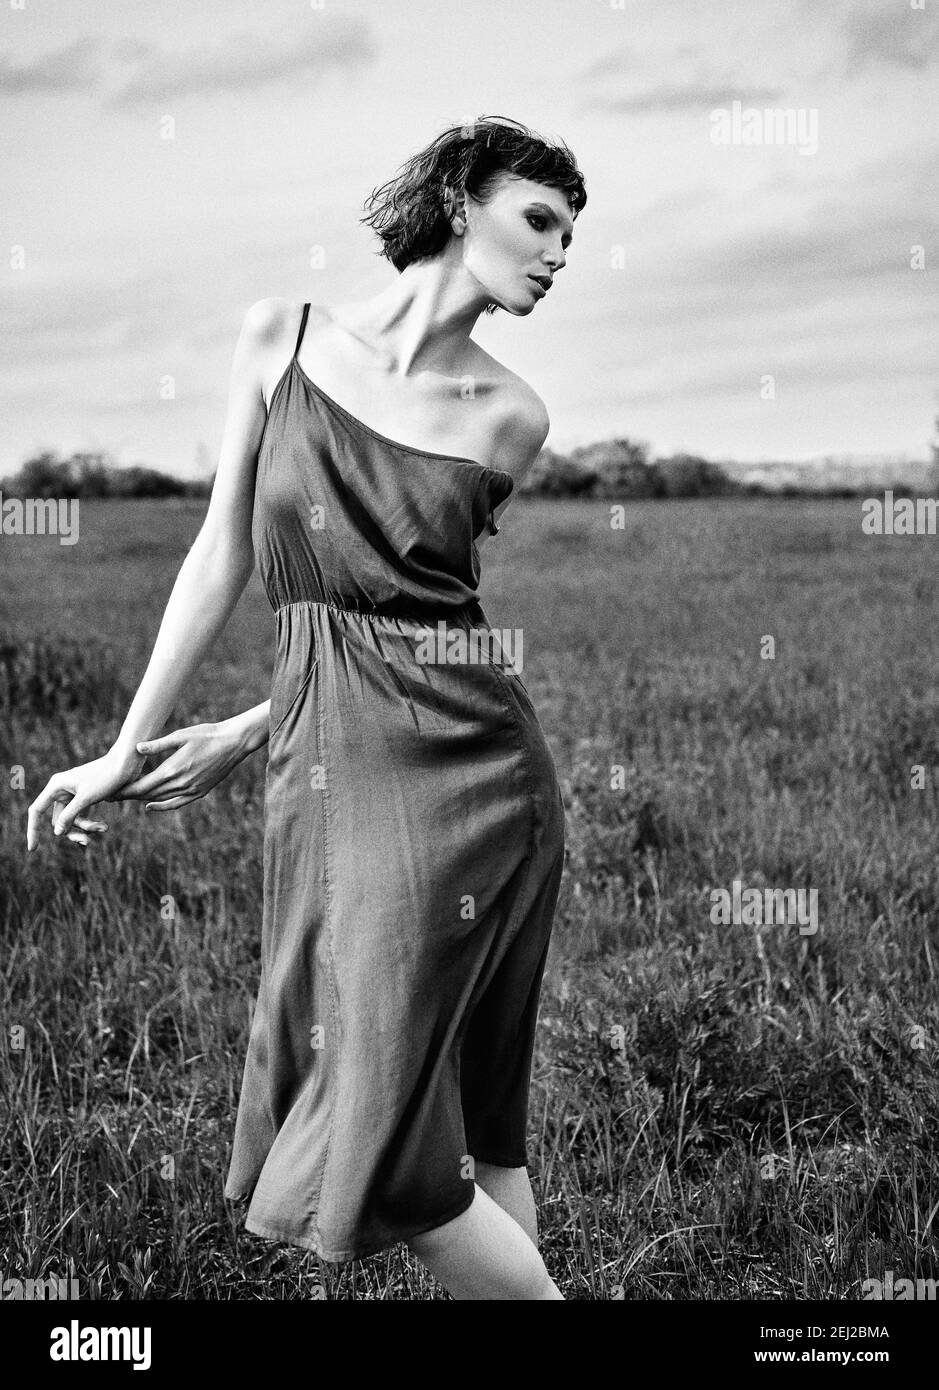 Foto de moda al aire libre: Hermosa chica triste en el campo. Retrato de una joven bonita vestido. Blanco y negro. Efecto de grano de película Foto de stock